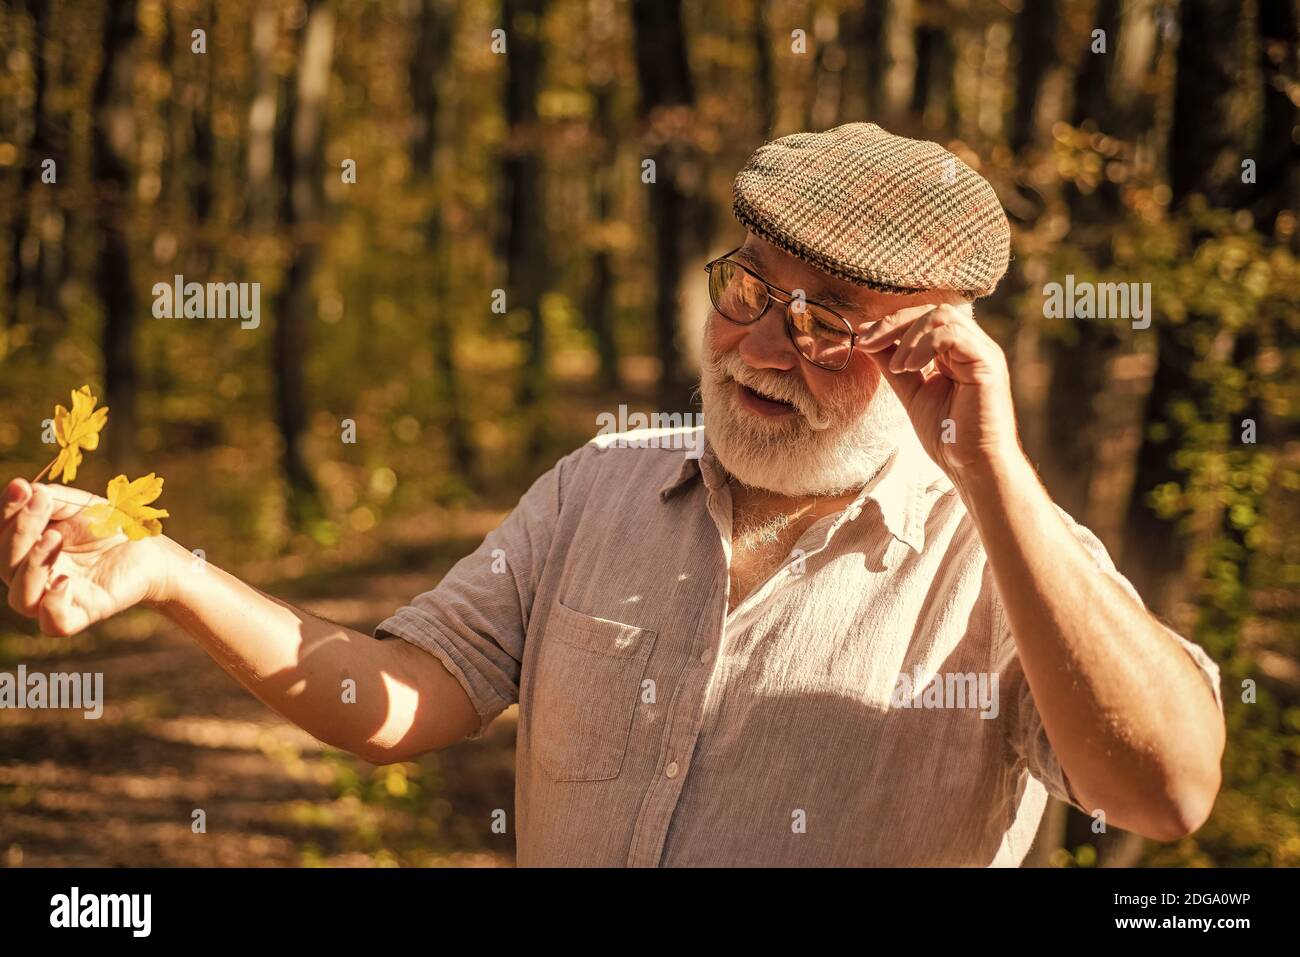 La vieillesse est la joie. Pensionné de vieillesse profiter de la nature d'automne. Le vieil homme recueille les feuilles jaunes. Personne âgée avec des cheveux gris. Retraite et retraite. Loisirs et style de vie. L'aventure vous attend. Banque D'Images